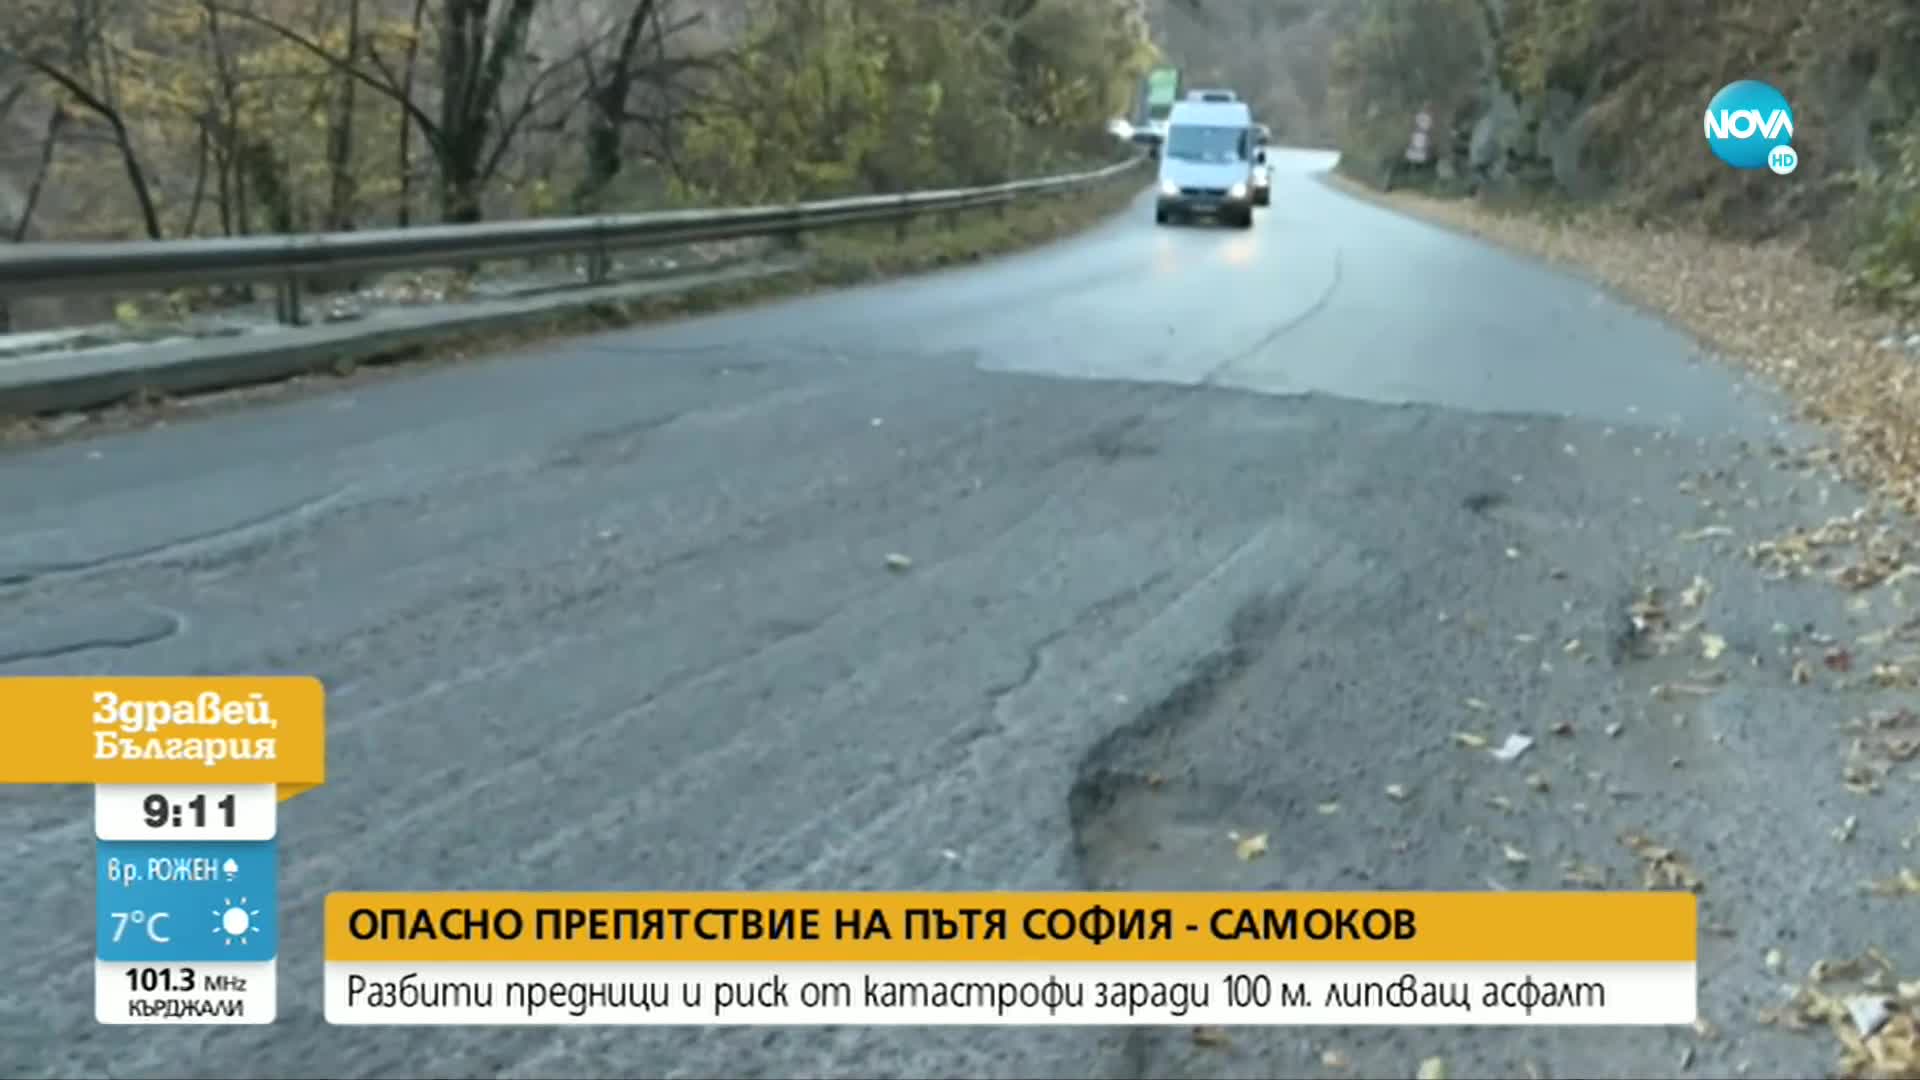 Шофьори се оплакват от огромни дупки на пътя София-Самоков